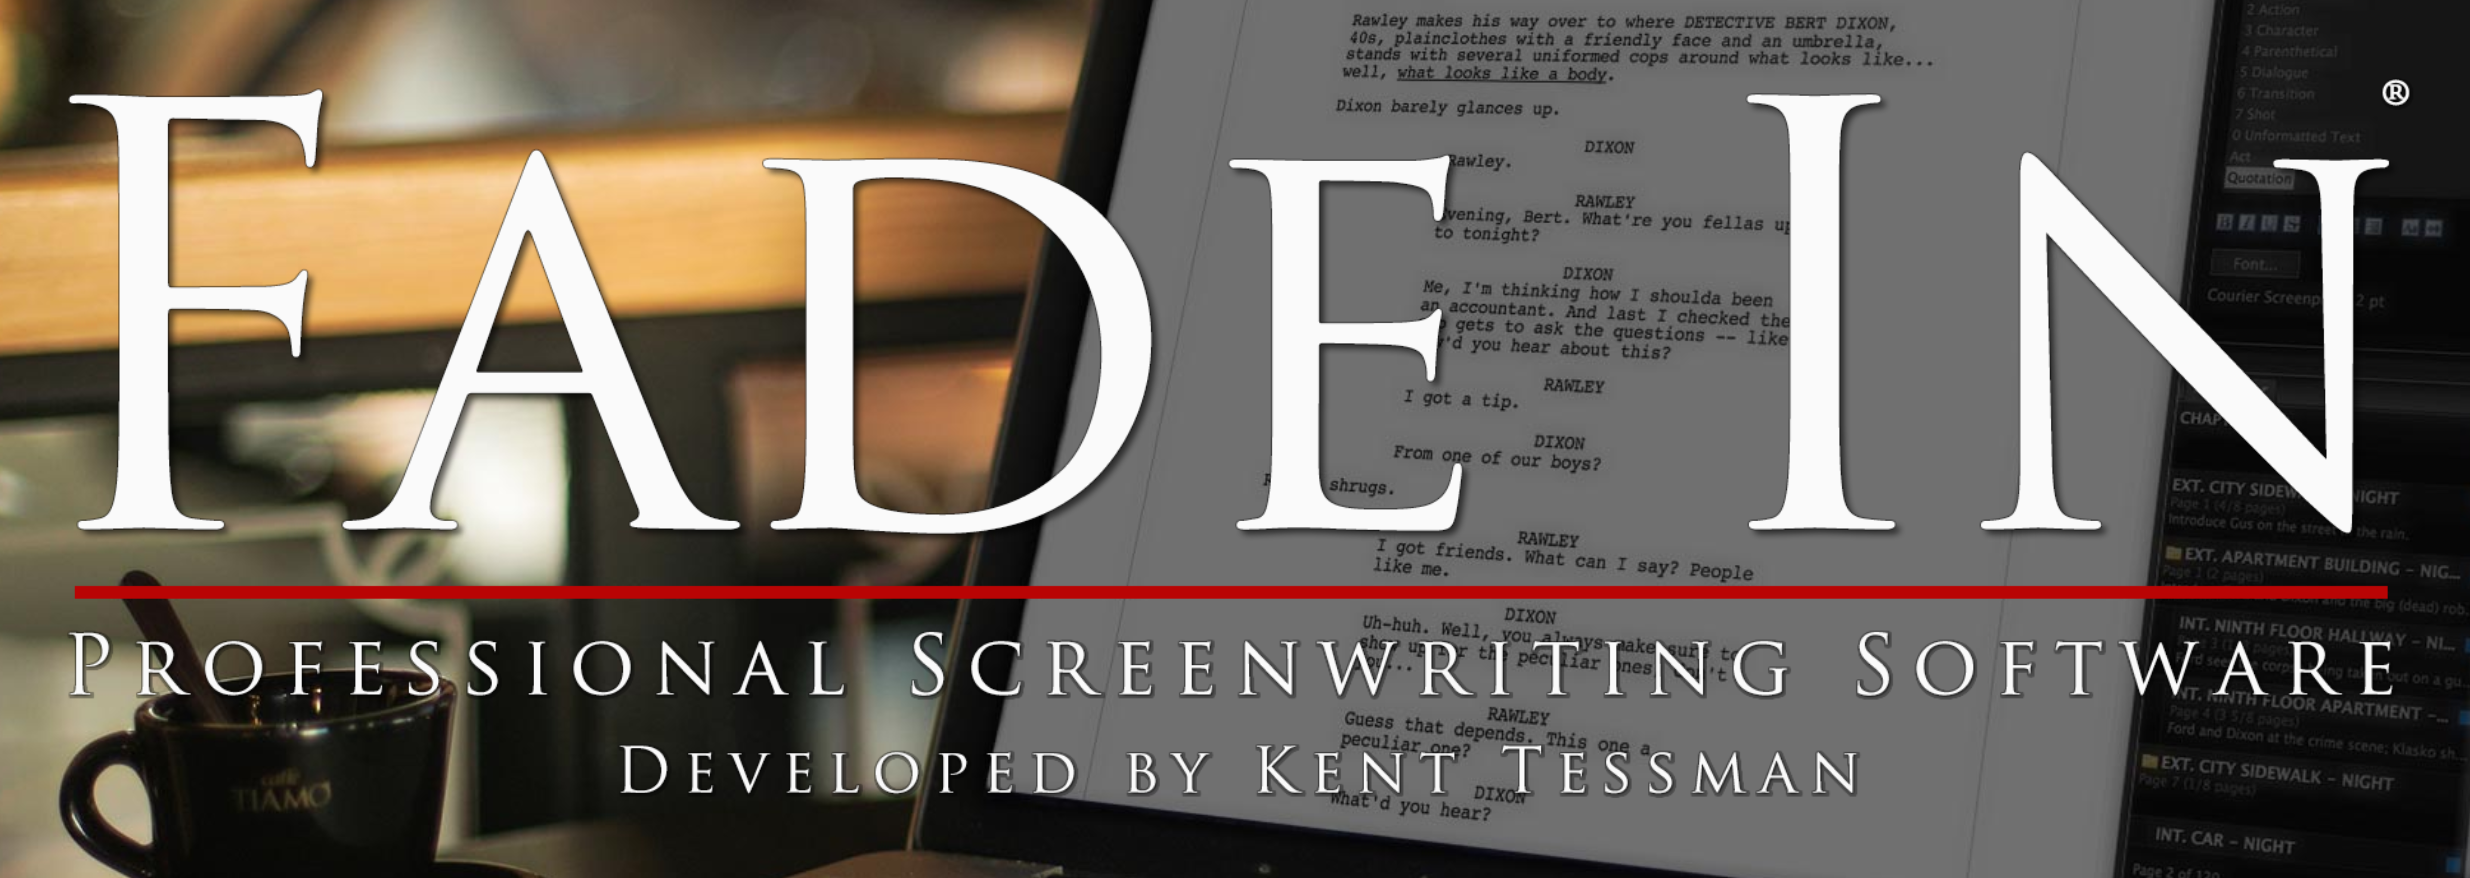 Fade In screenwriting software